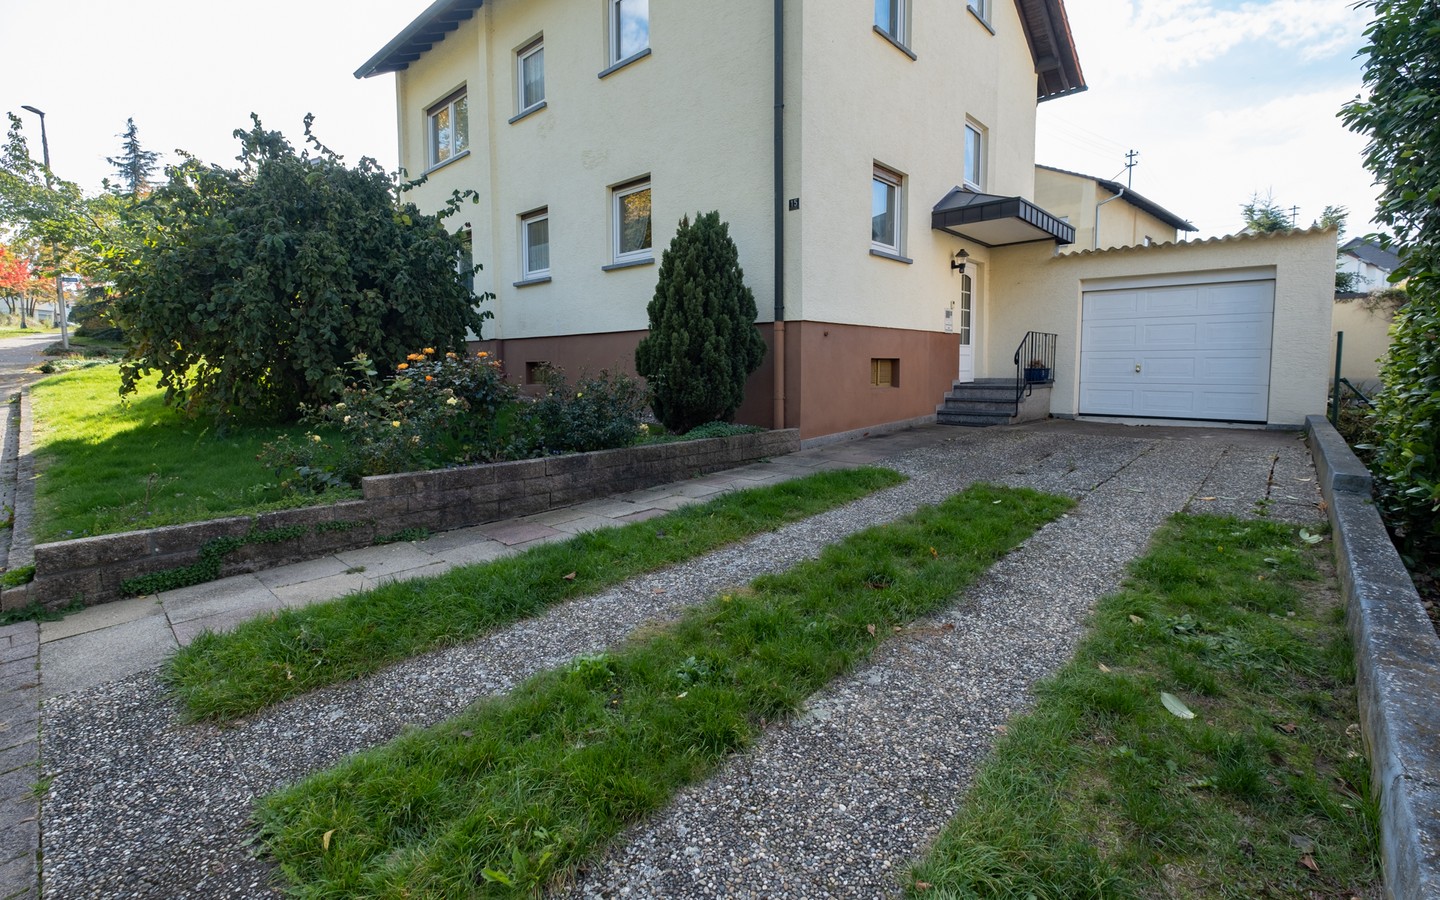 Hauszugang - Direkt am Kurpark in Bad Rappenau: Freistehendes Wohnhaus in ruhiger Wohnlage mit herrlichem Garten